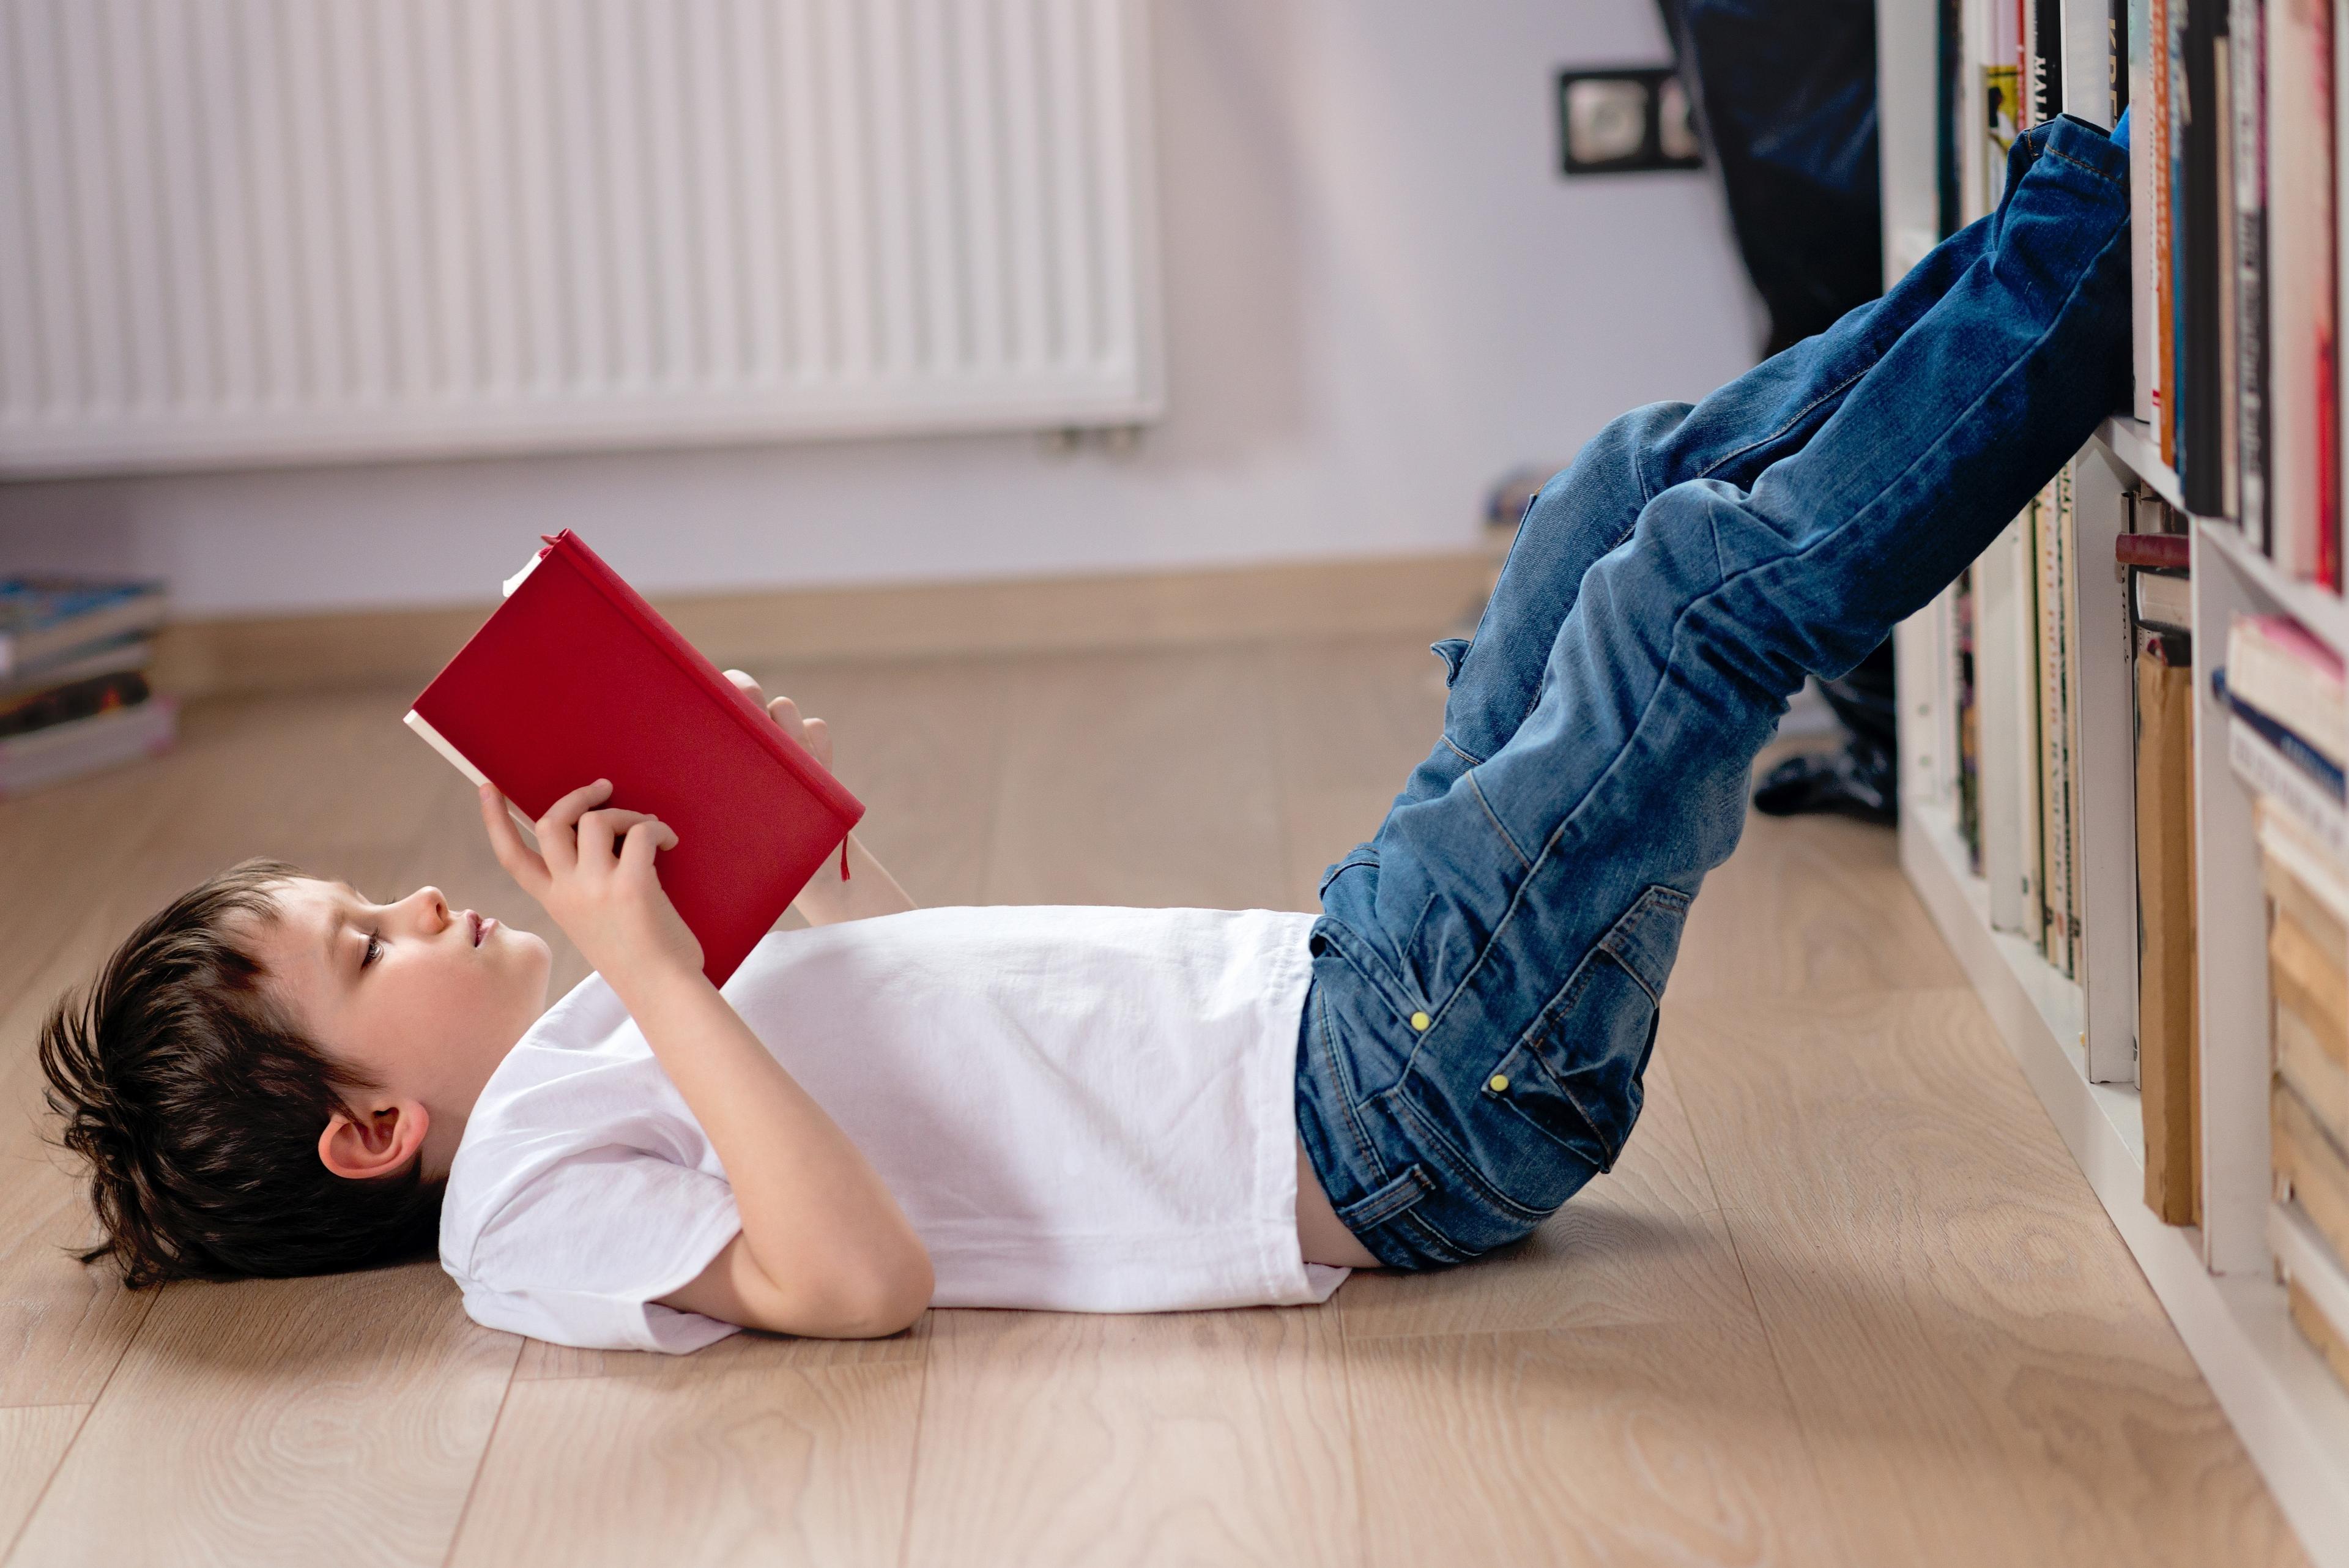 Читать мальчик 8 лет. Чтение лежа. Книги для детей. Мальчик лежит на полу. Ребенок читает лежа.